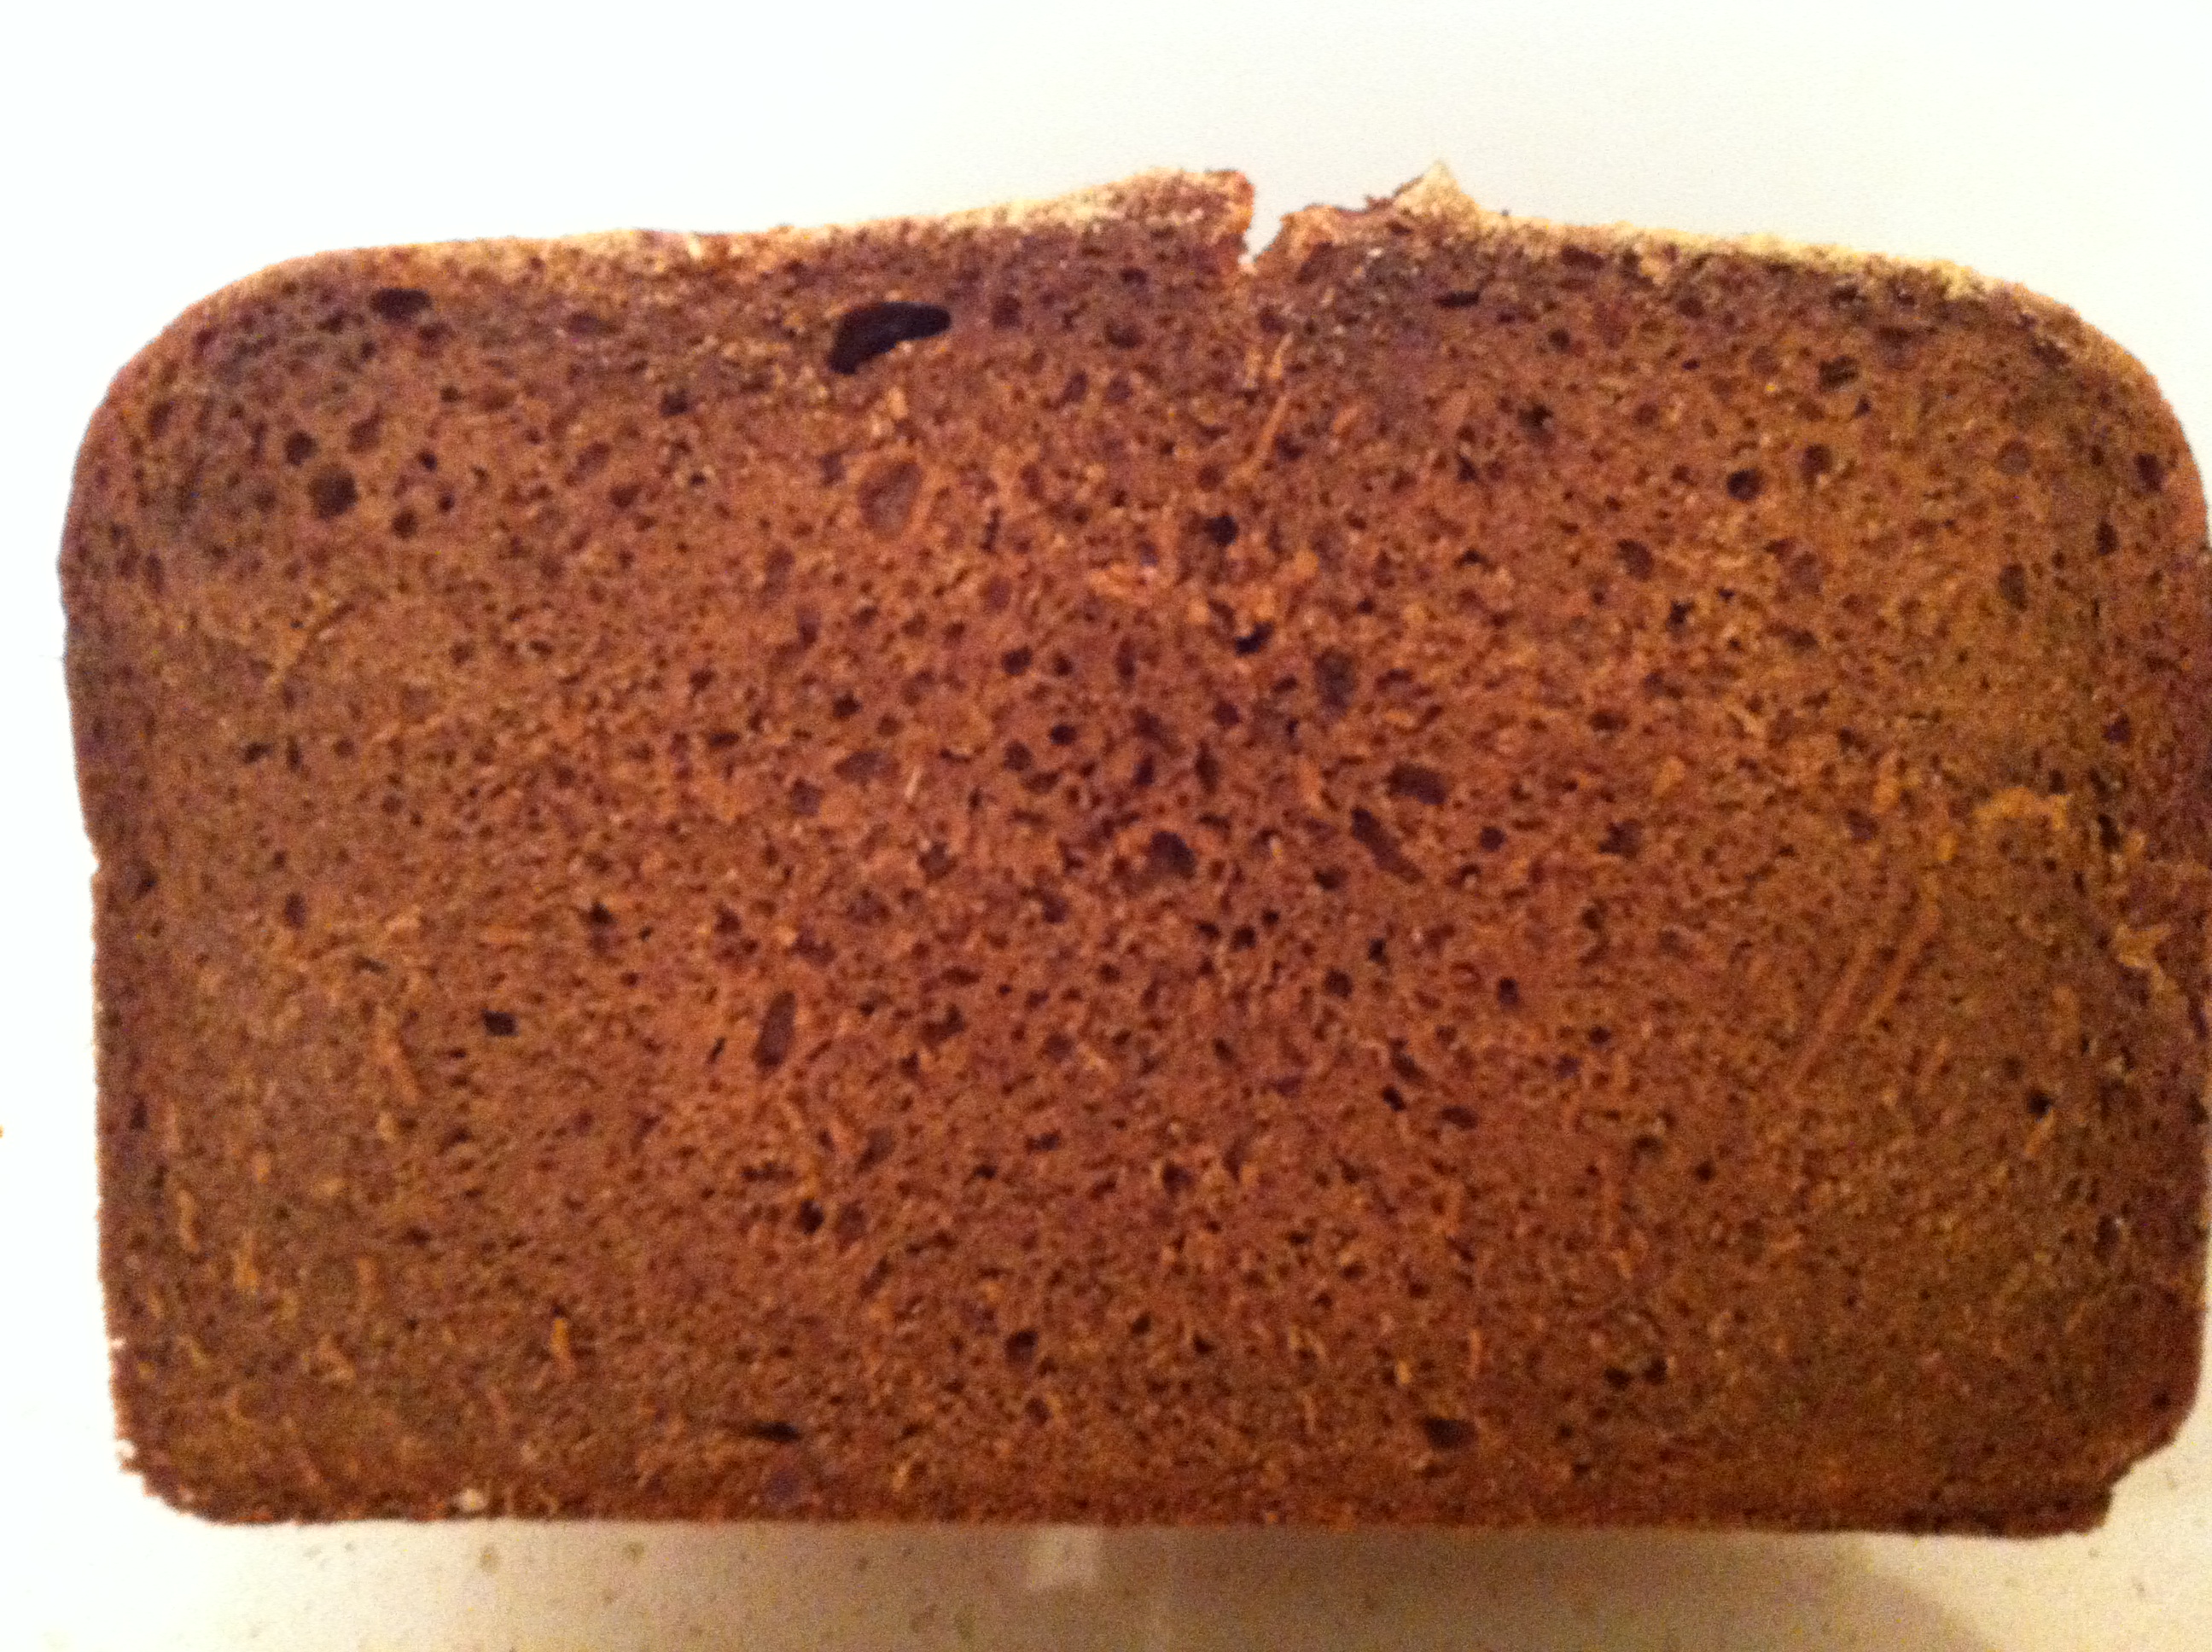 לחם שיפון פודינג הוא אמיתי (כמעט נשכח).שיטות אפייה ותוספים